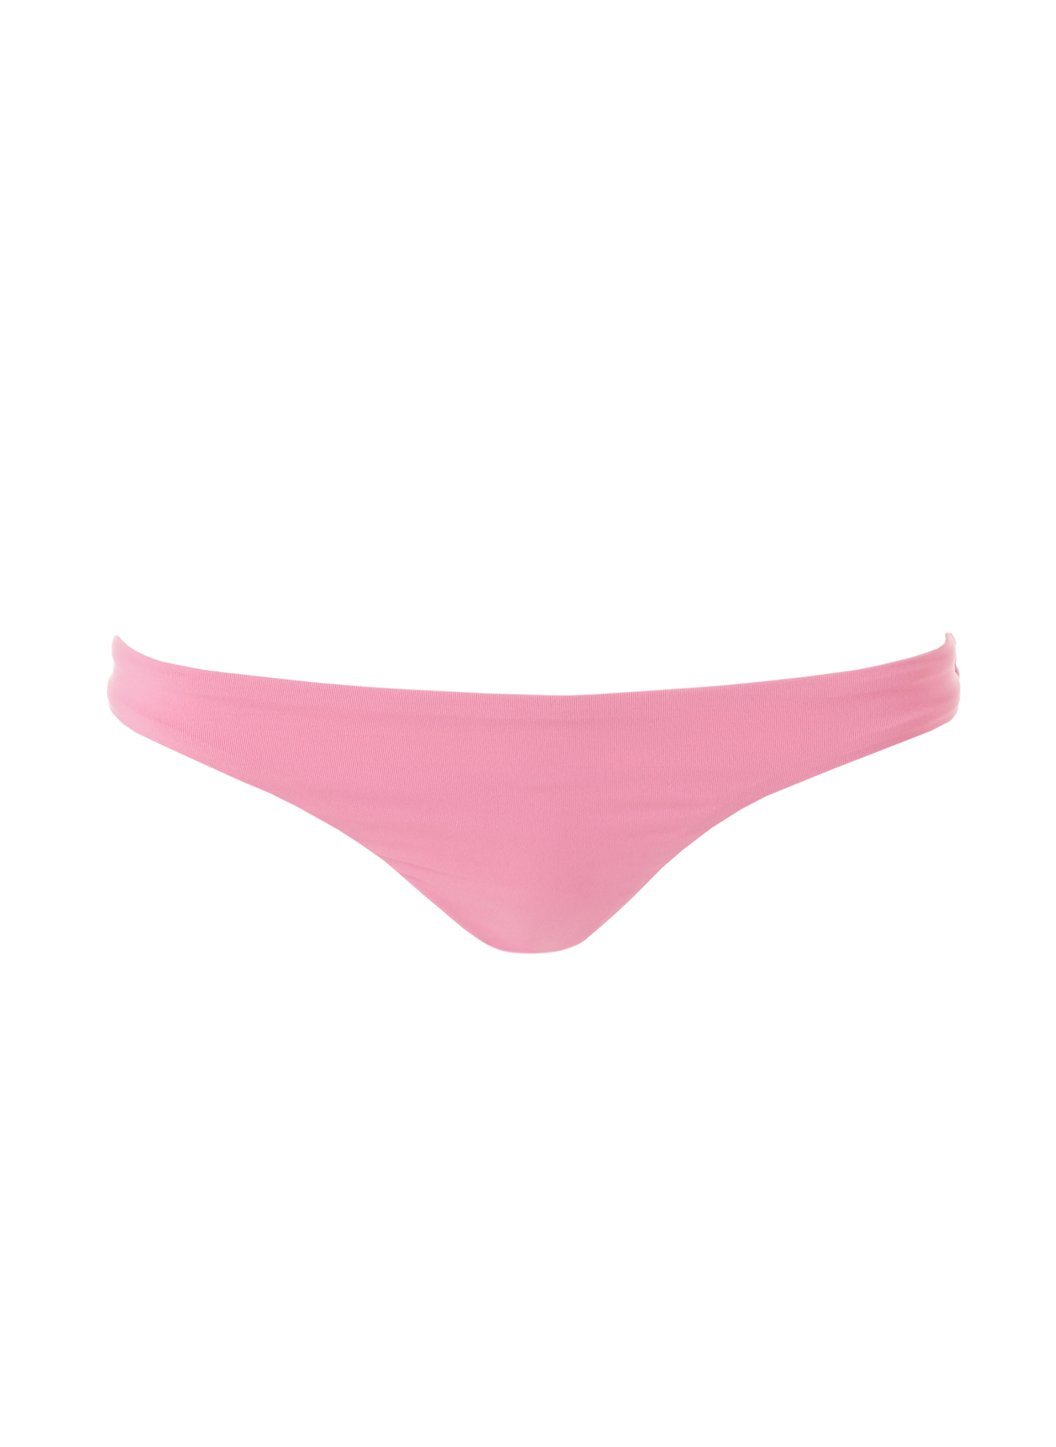 barcelona-rose-bikini-bottom